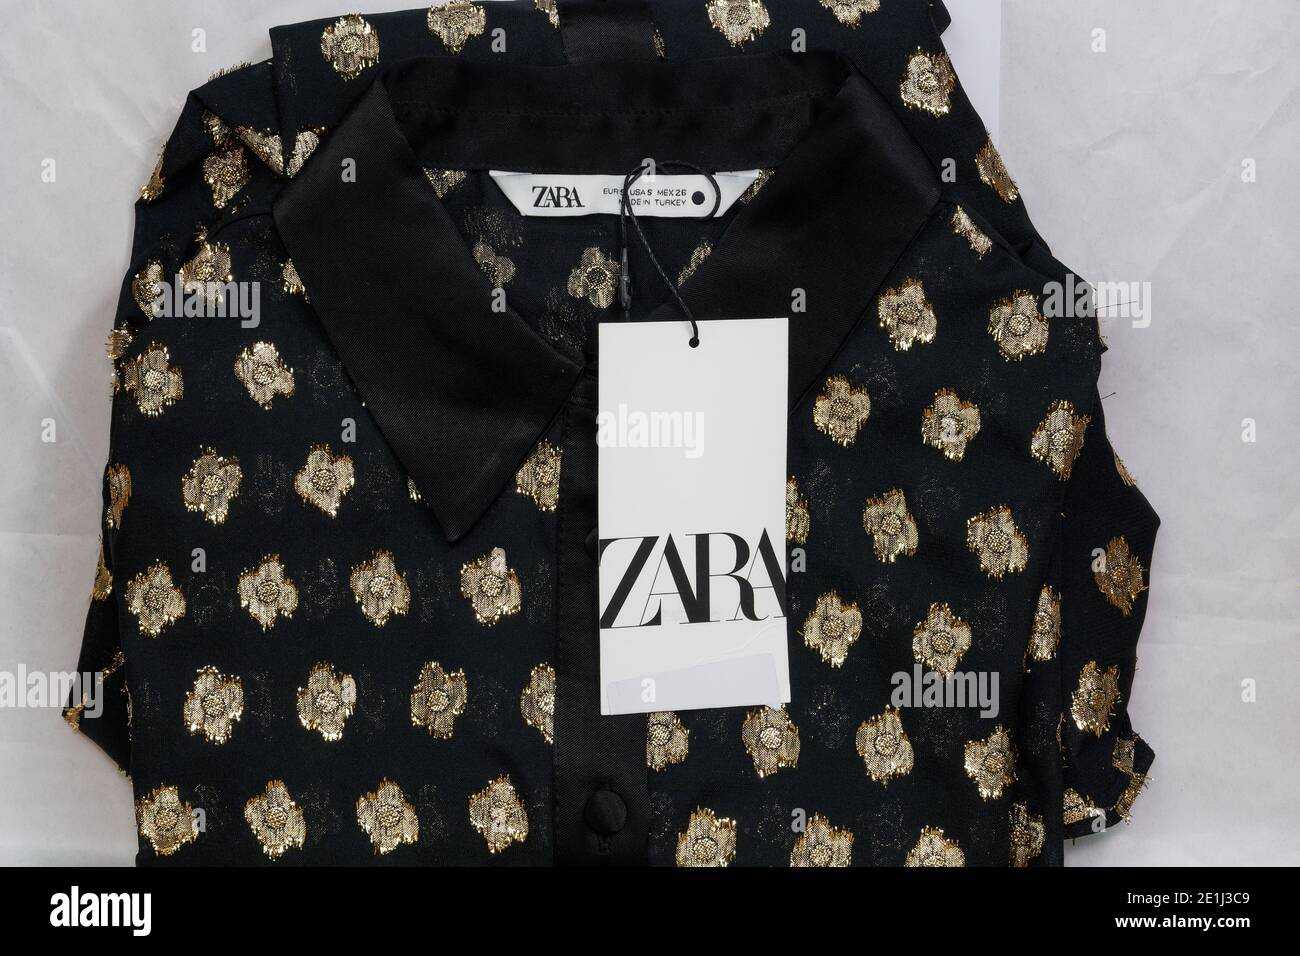 Zara spanische Kleidung Marke Online-Lieferung. Paket mit Inditex Händler  gefaltetes Shirt mit Firmenlogo bestellen Stockfotografie - Alamy